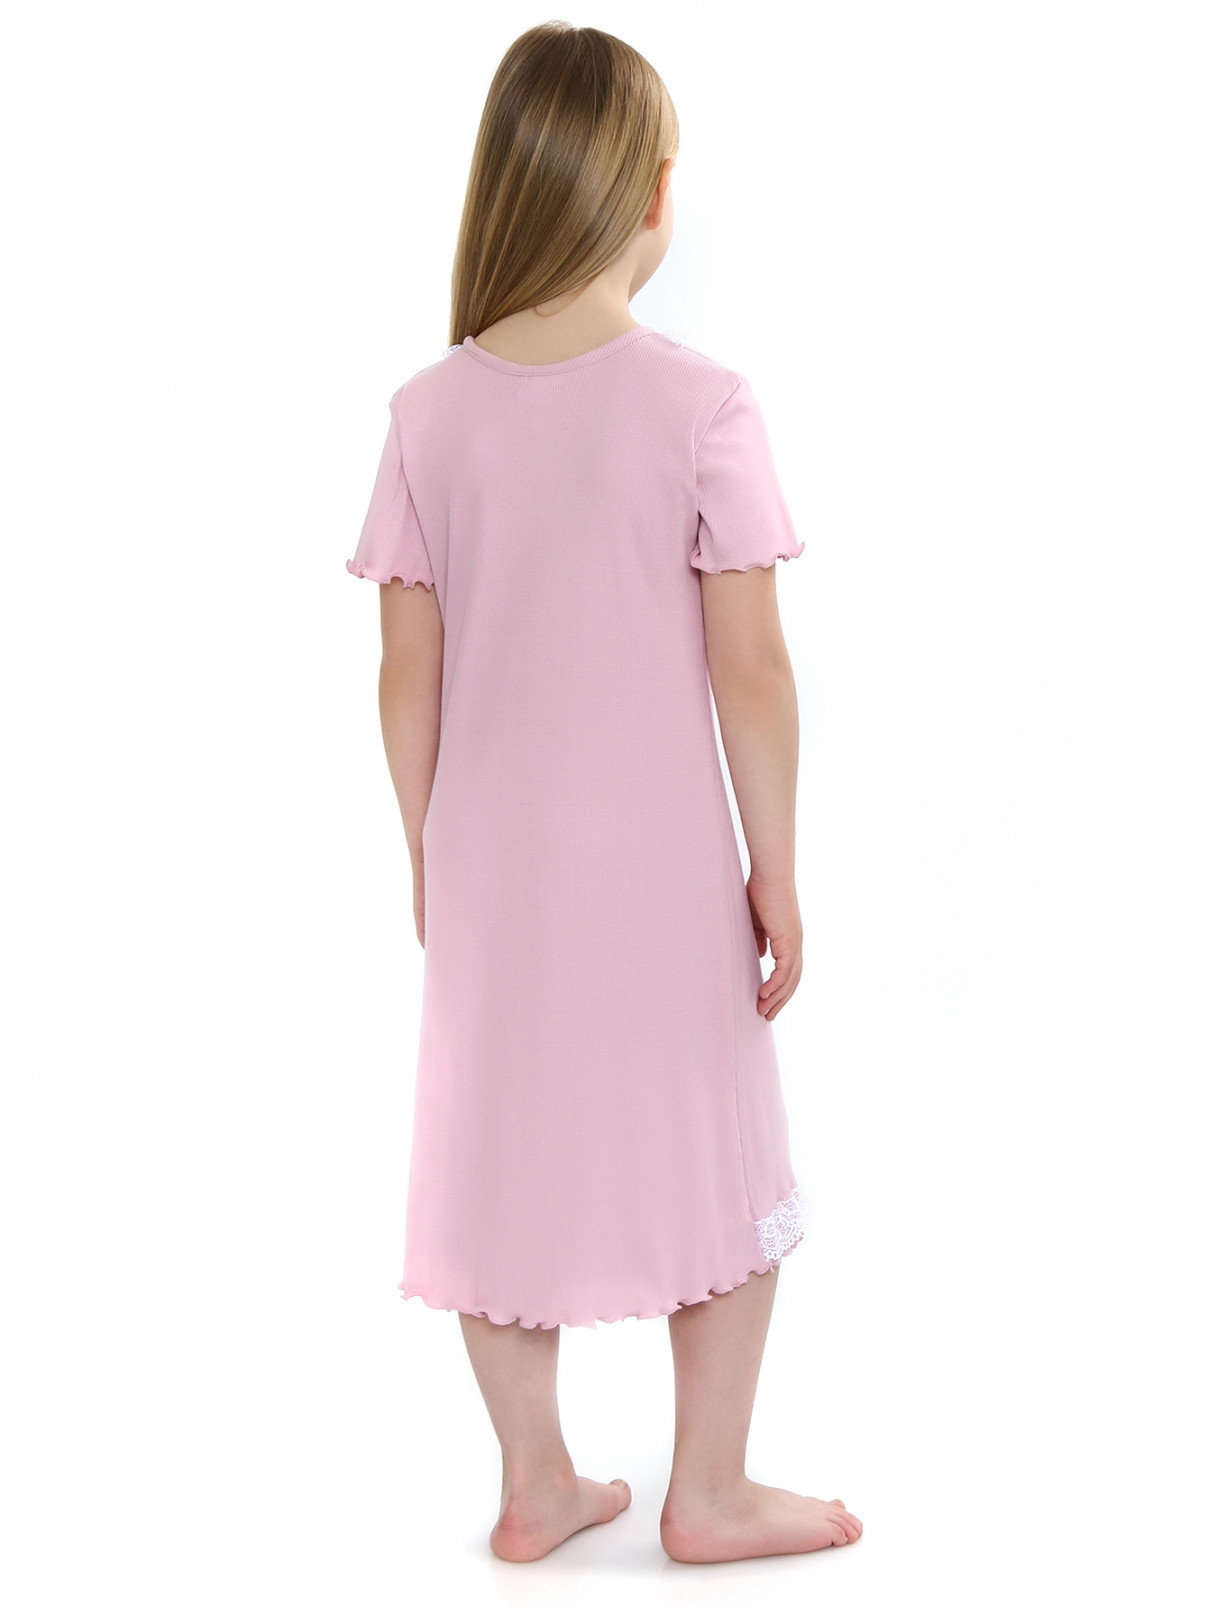 Сорочка из хлопка с кружевной отделкой Giottino  –  Модель Верх-Низ1  – Цвет:  Розовый